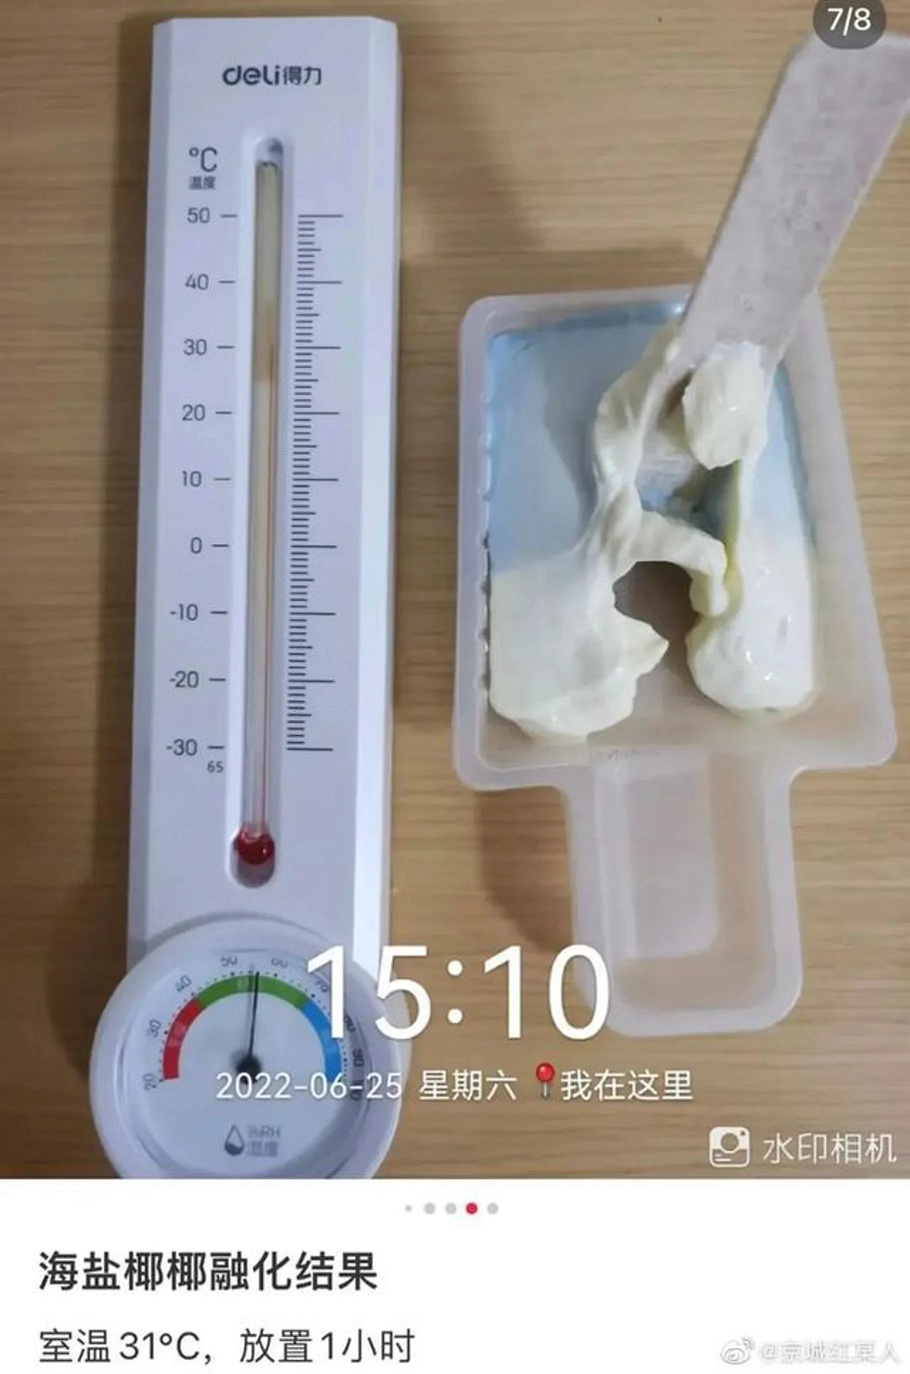 Loại kem đắt tiền của Trung Quốc không chảy ở nhiệt độ trên 30 độ C gây hoảng